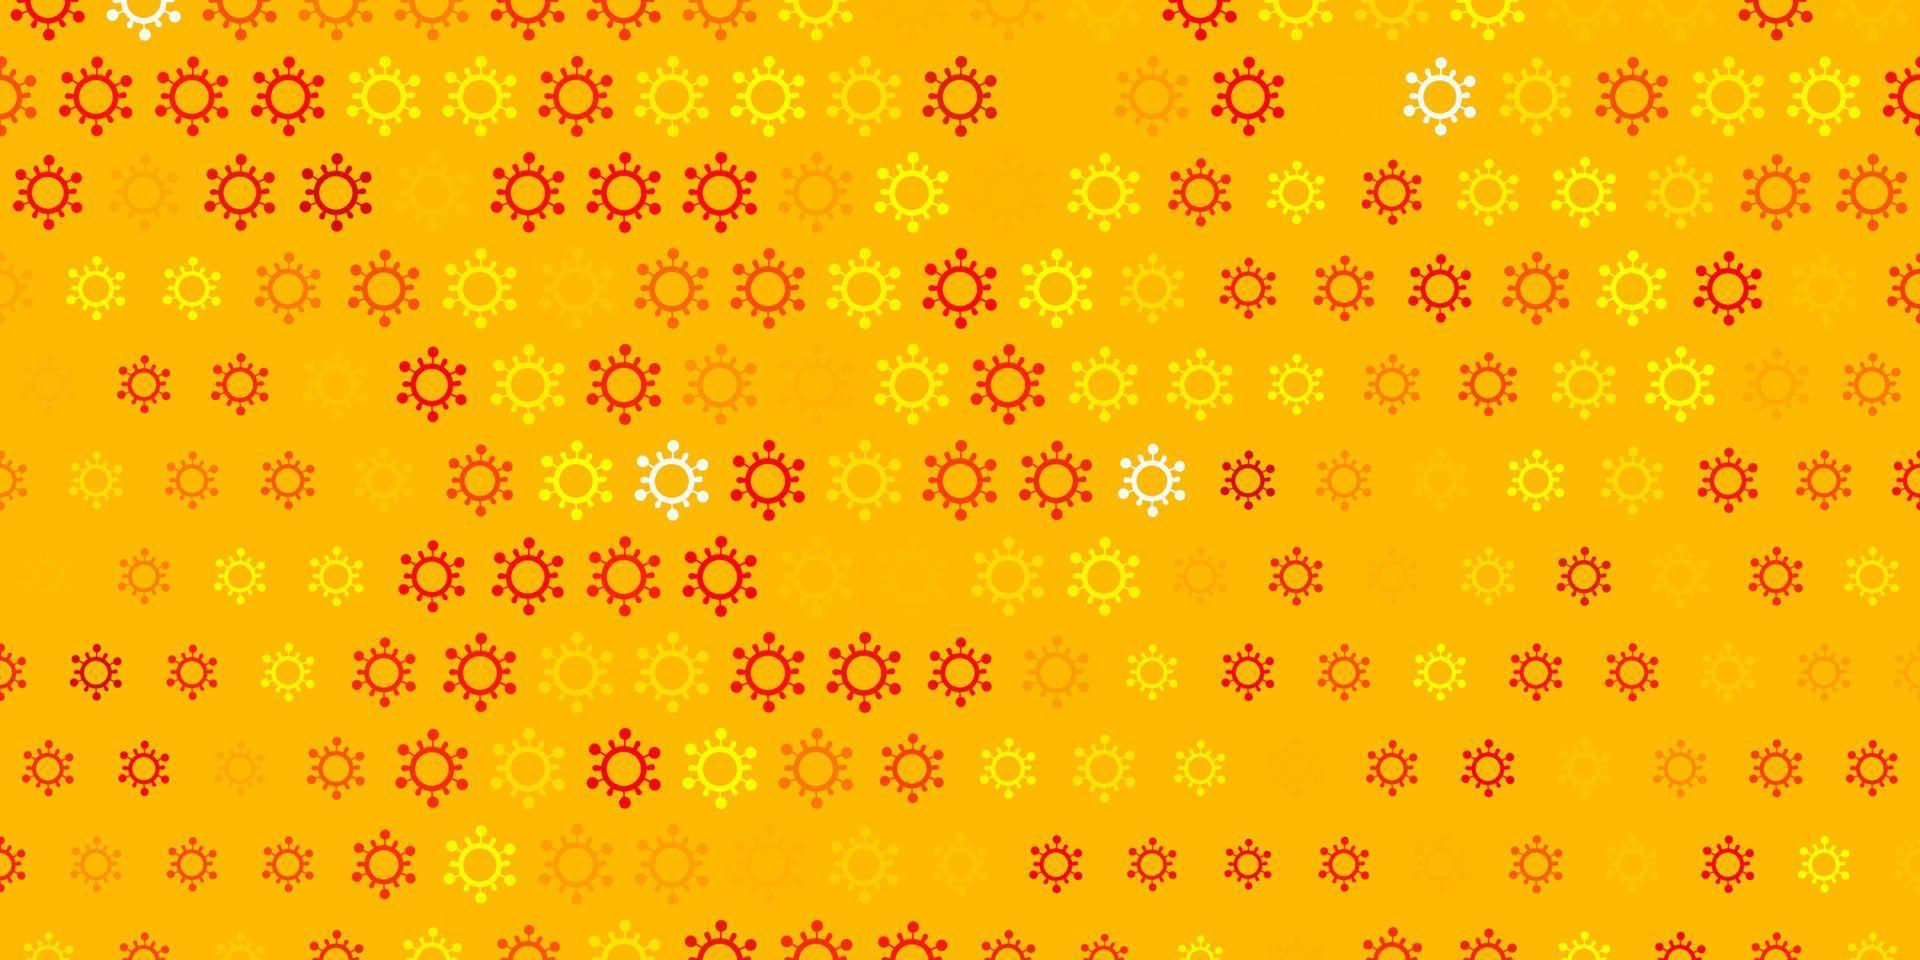 ljus orange vektor bakgrund med covid-19 symboler.